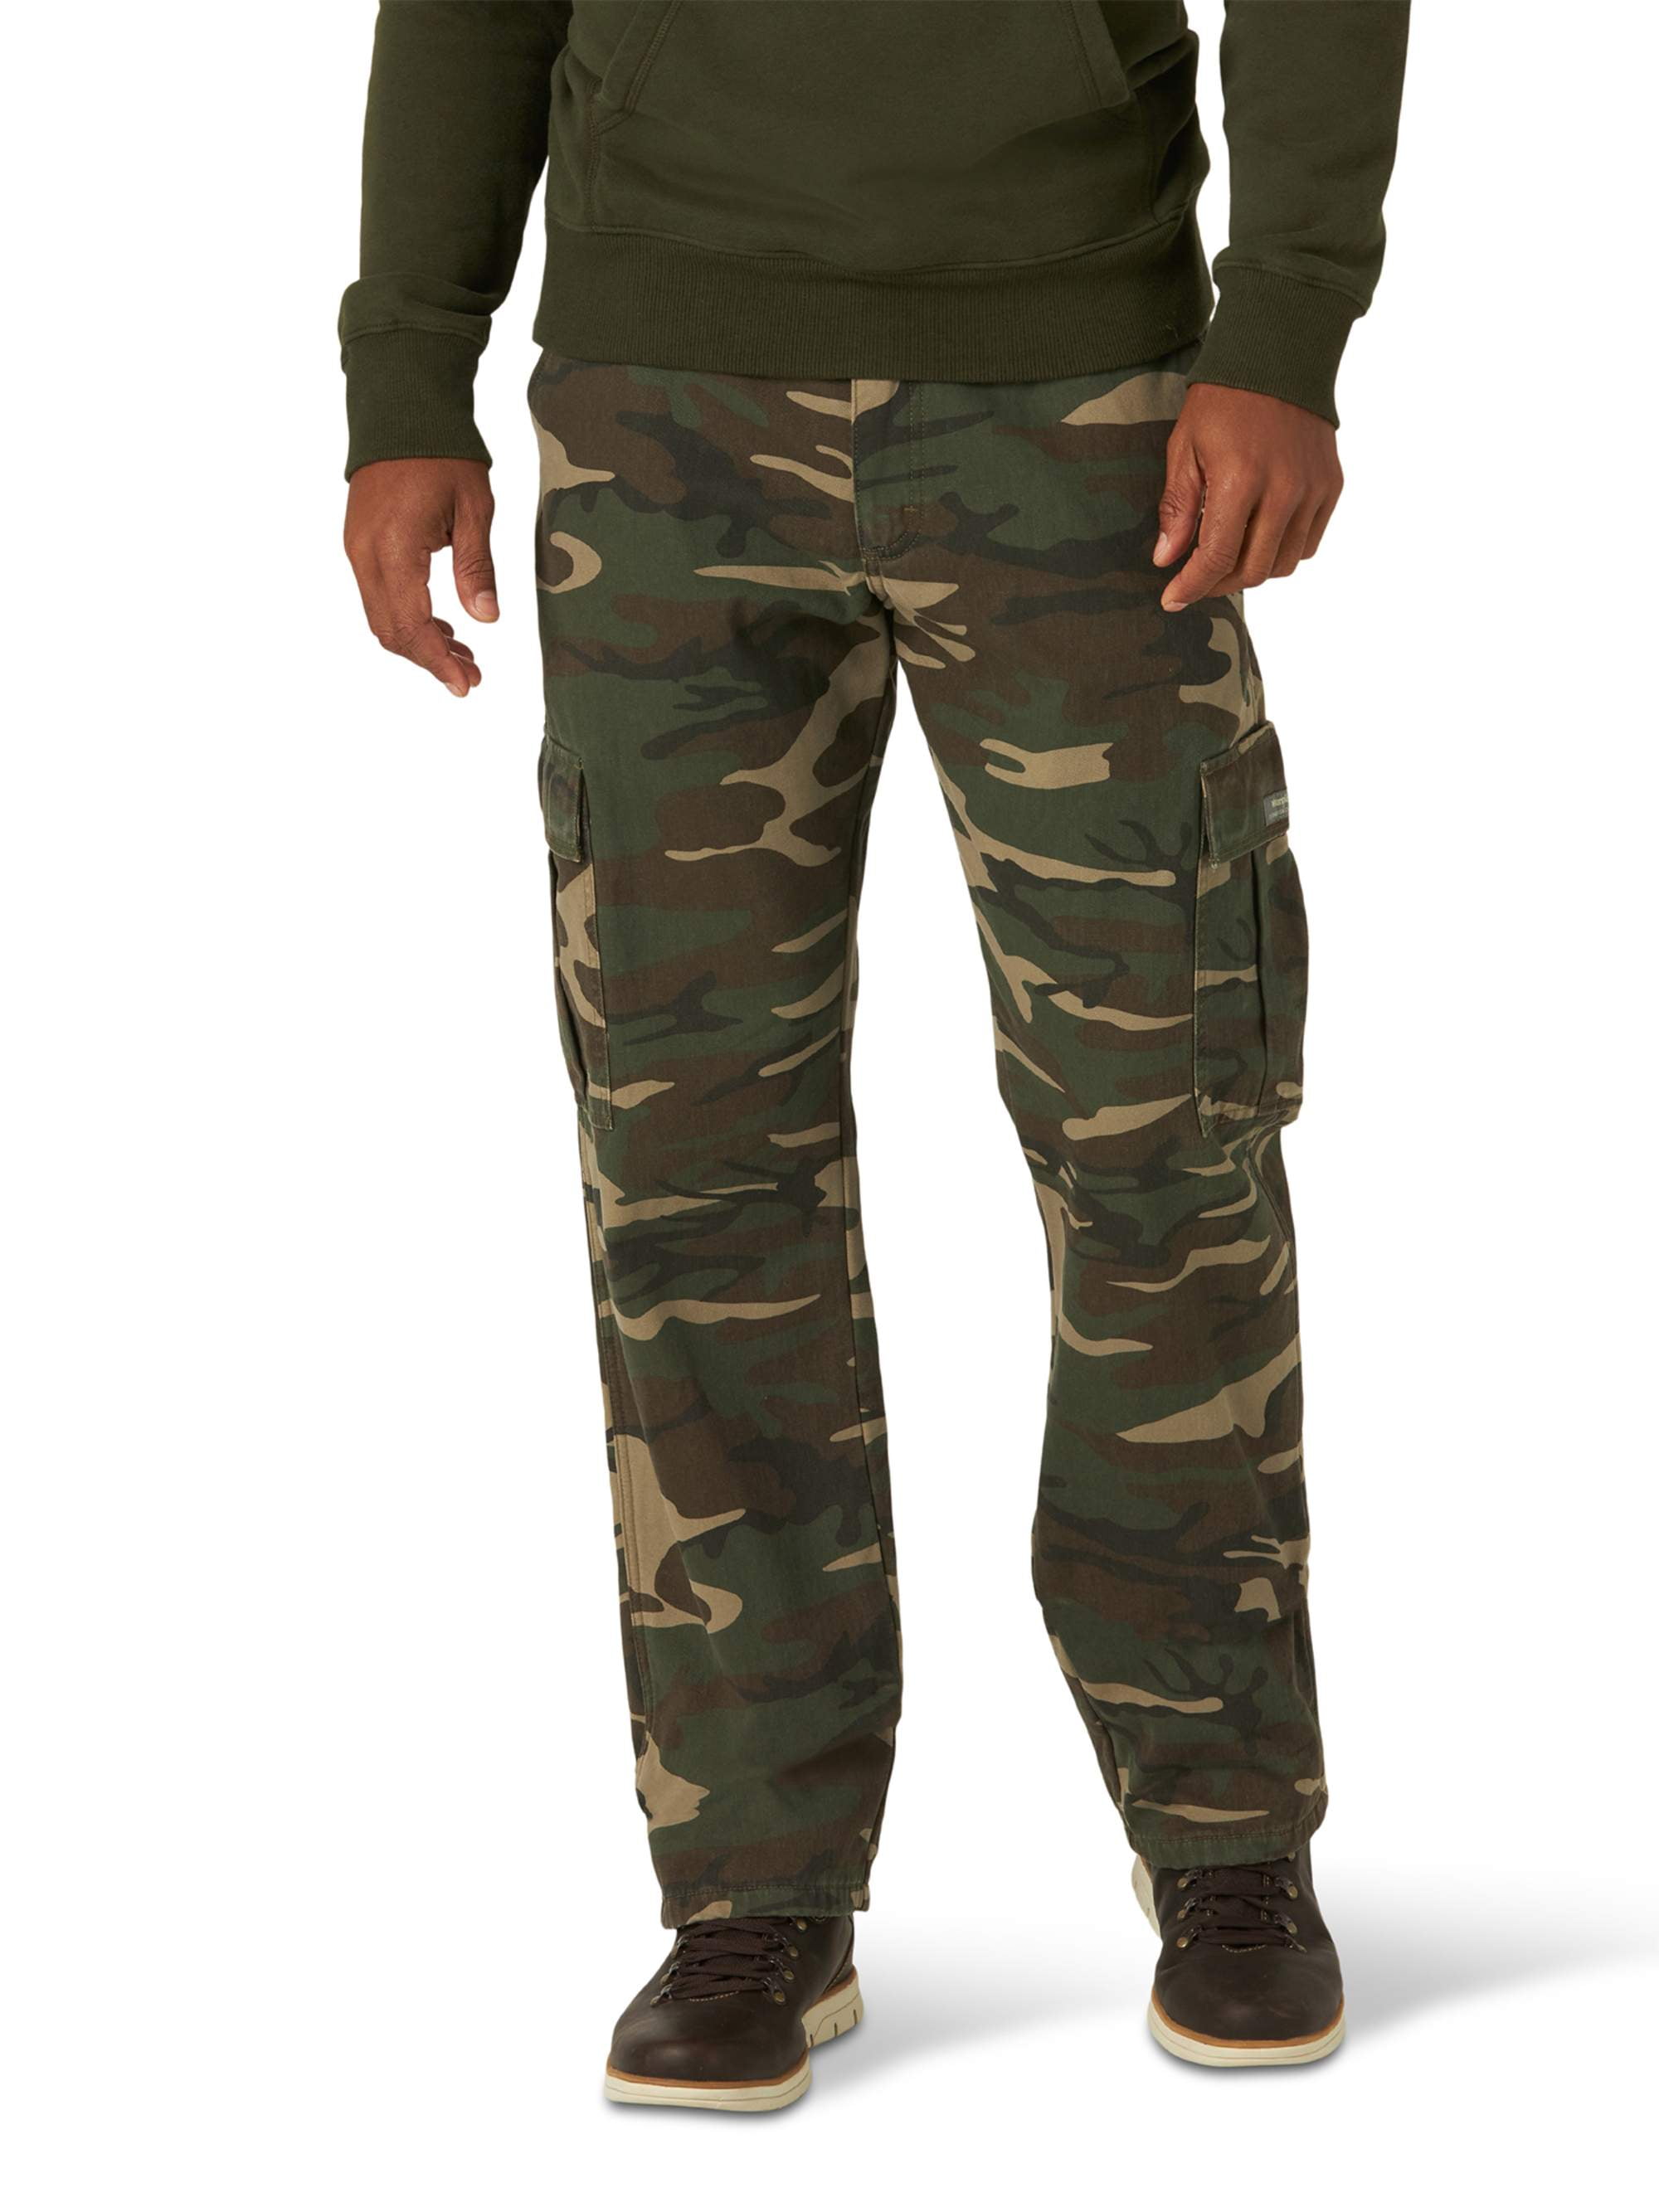 fleece lined camouflage pants